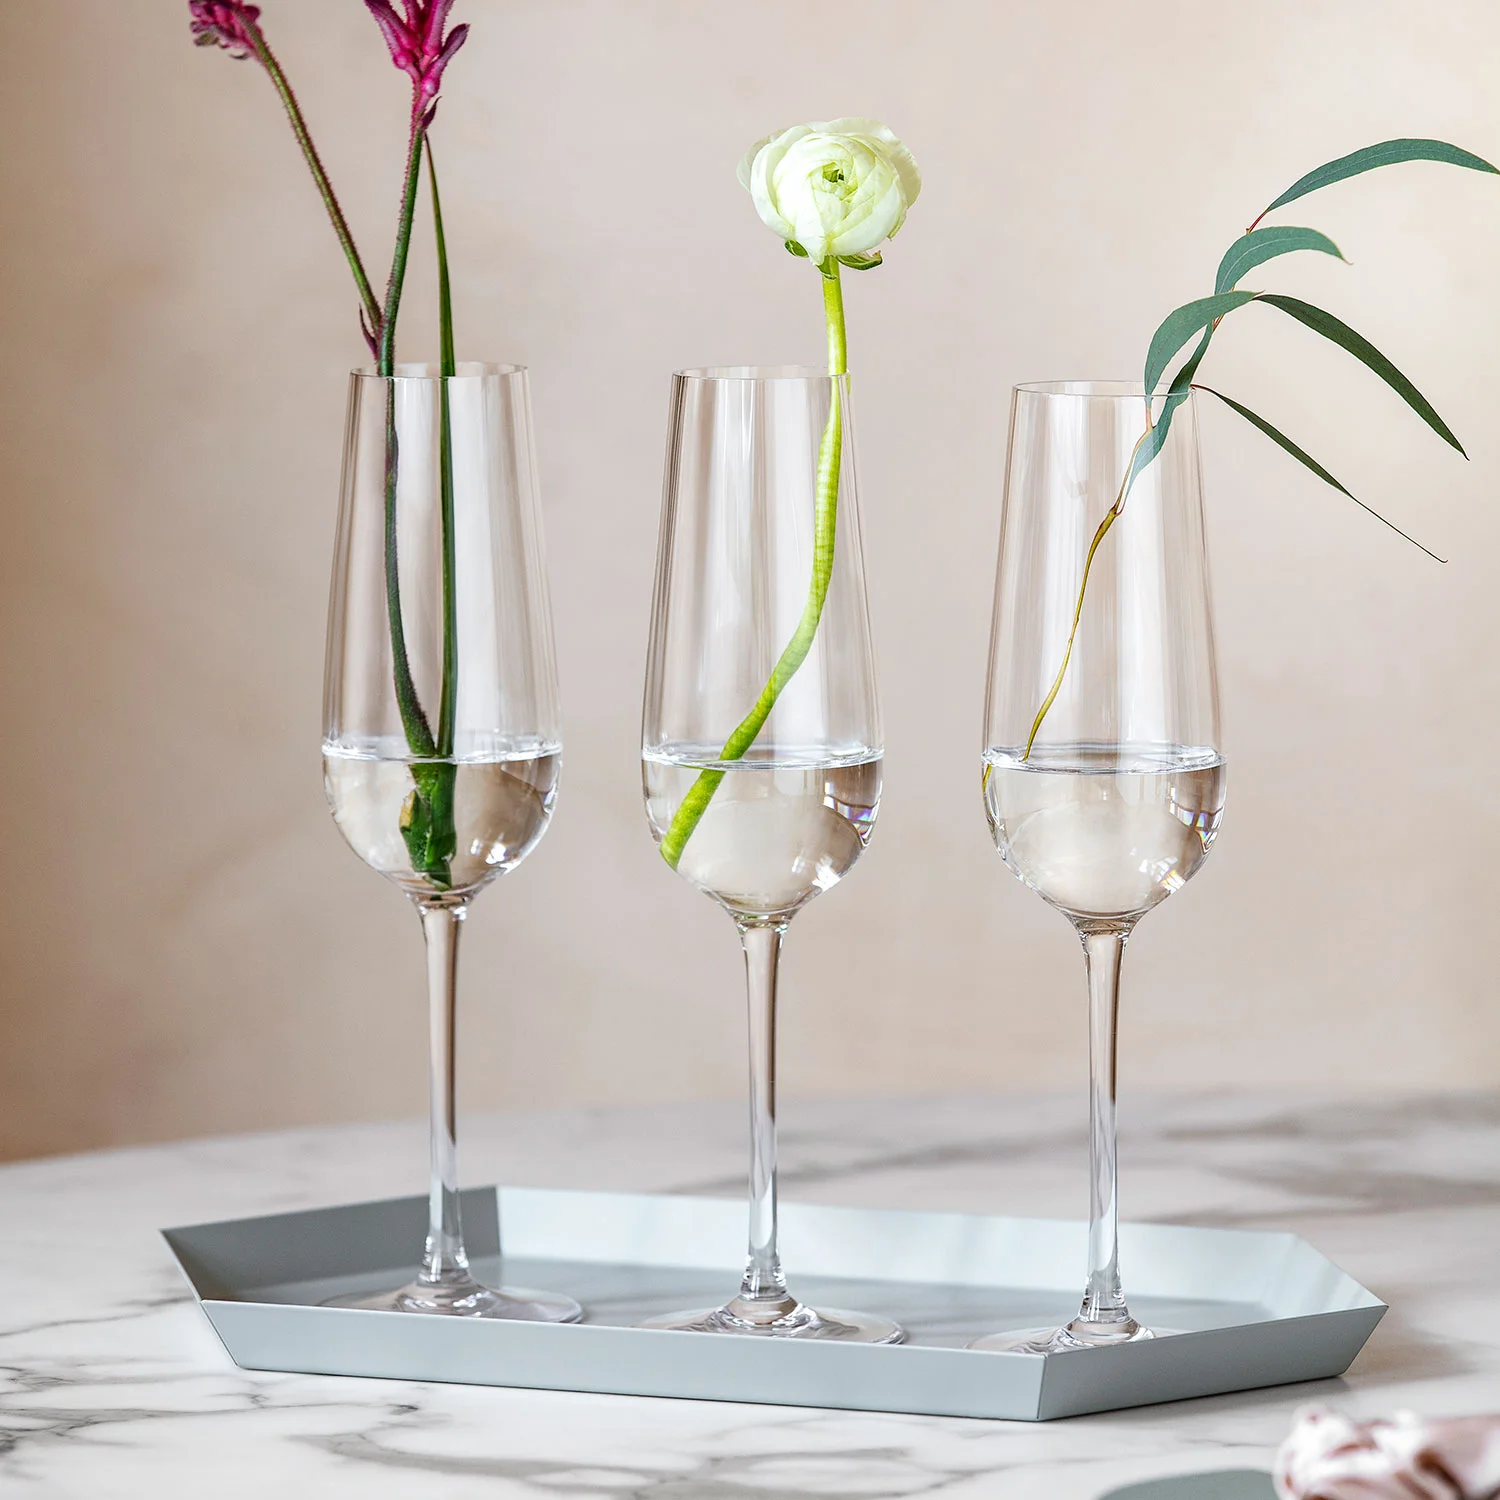 Rose Garden Glass Набор бокалов для шампанского, 4 шт.